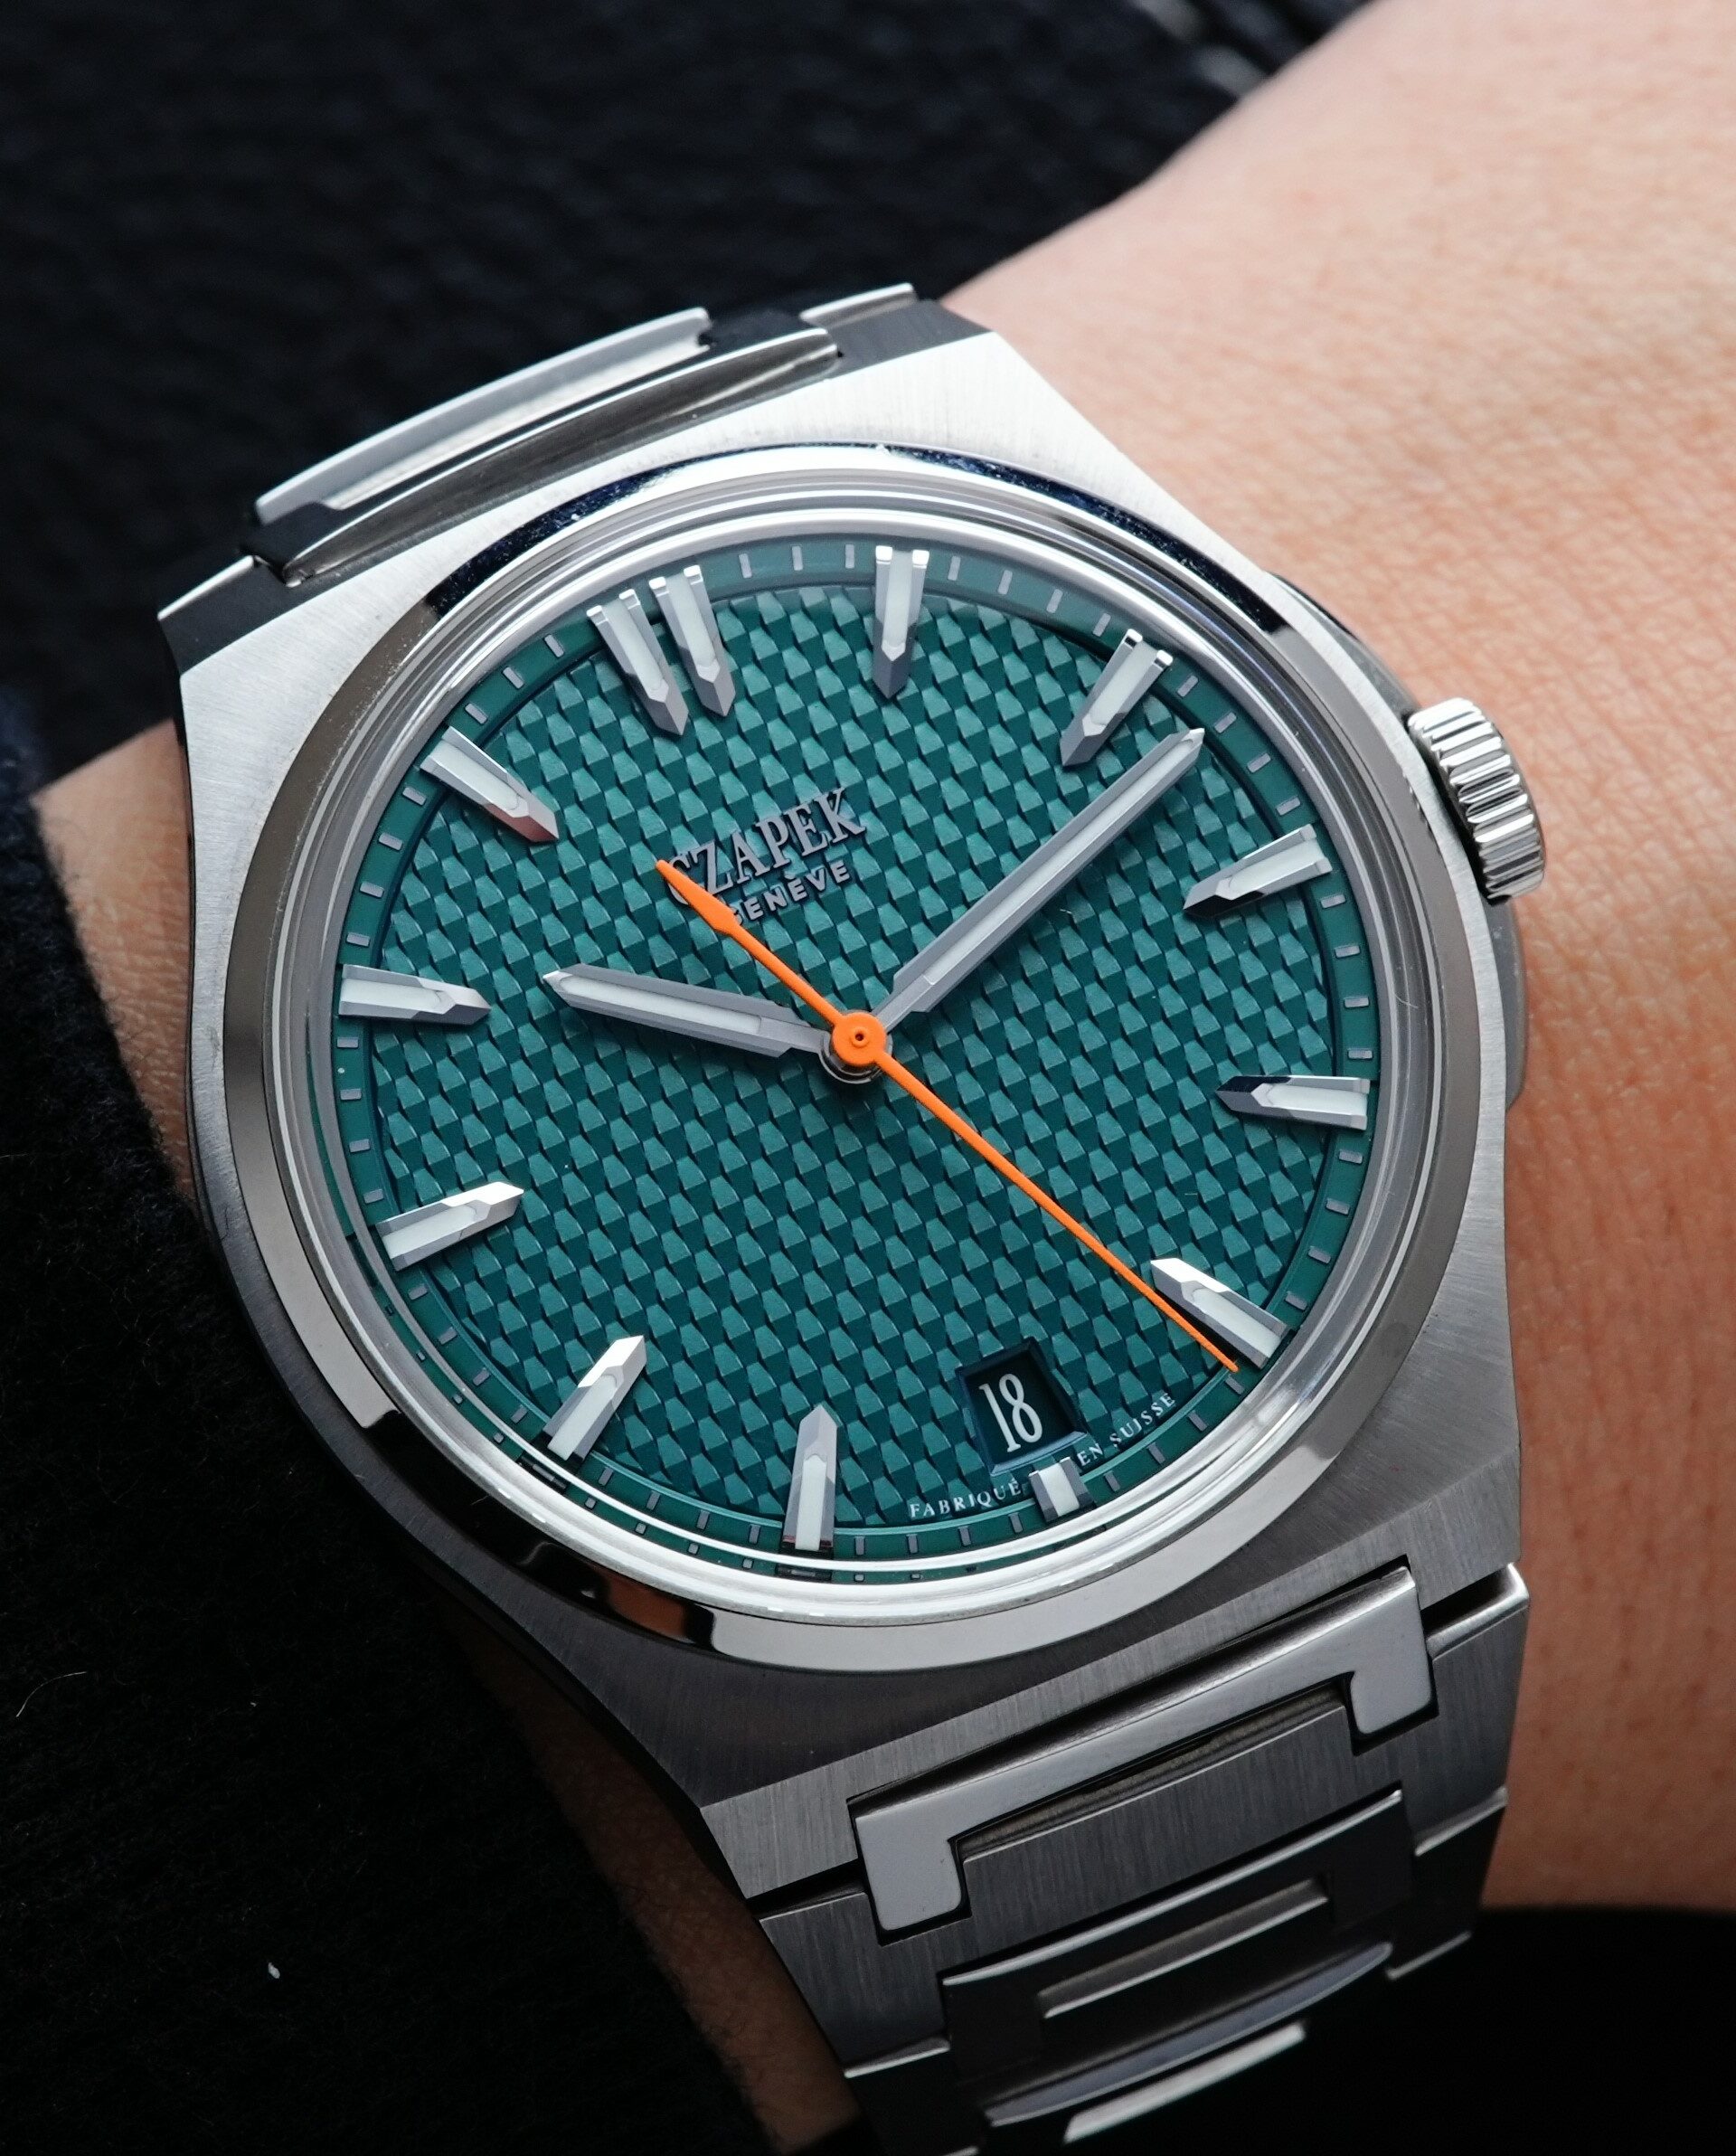 Czapek Fratello x Czapek Antarctique Passage de Drake Limited watch featured on the wrist.